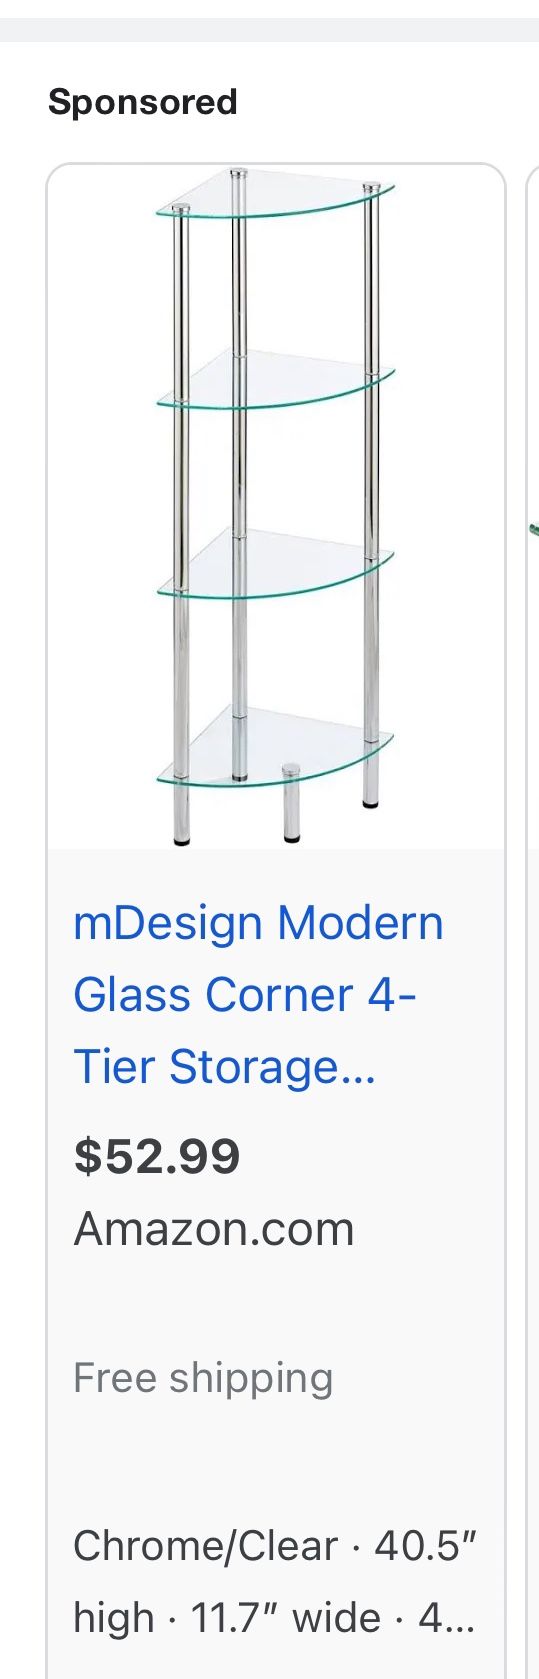 Two Corner Glass Shelves